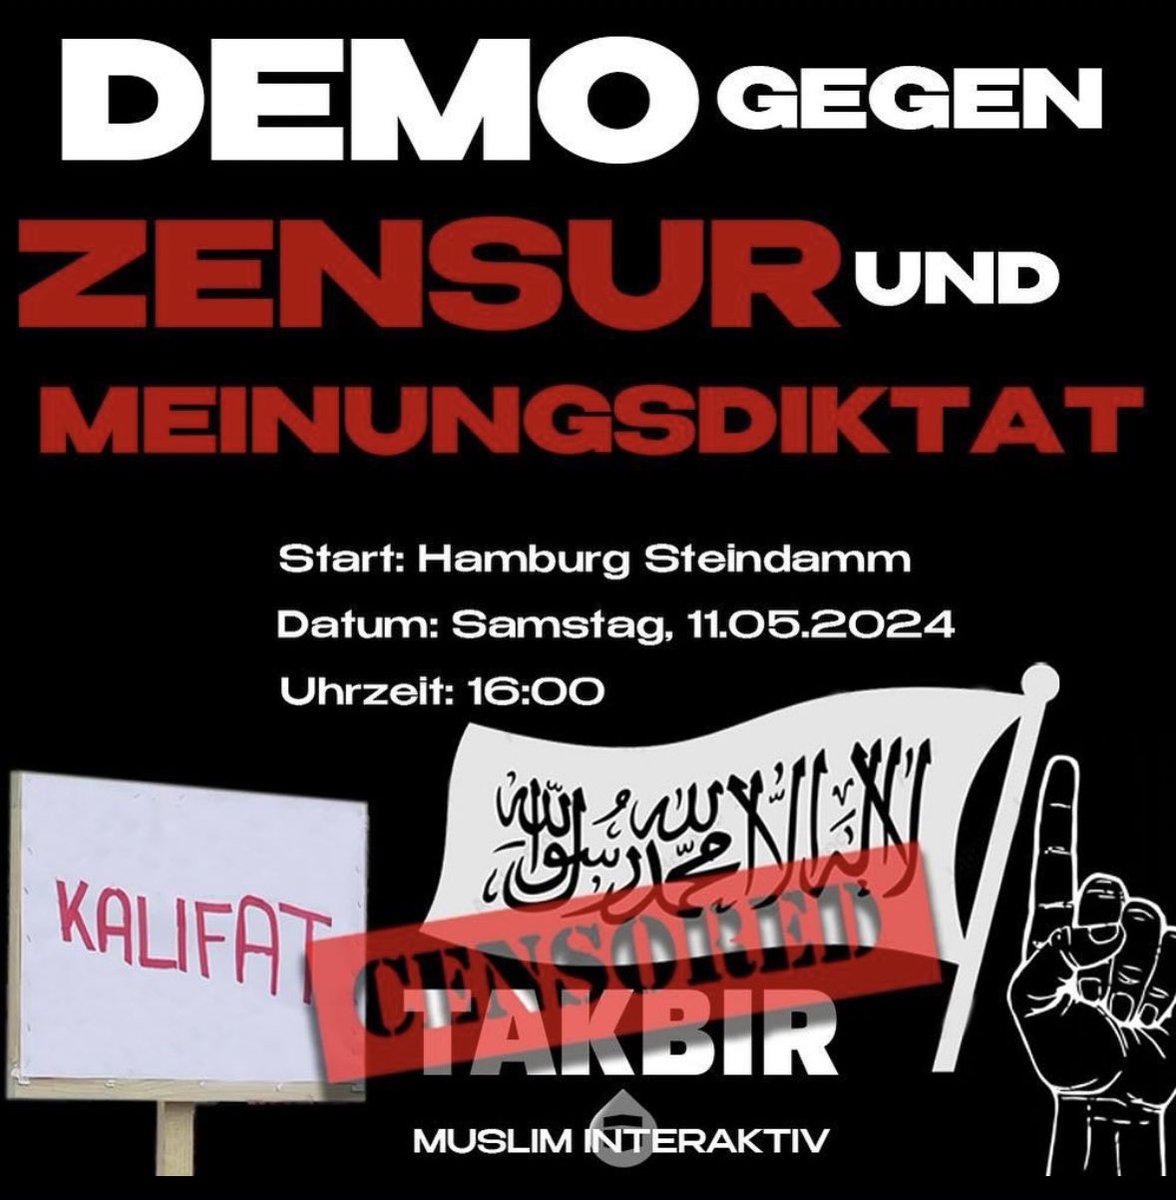 Die #Islamisten von #MuslimInterakiv (#HizbutTahrir) rufen zur nächsten Demo auf - wieder in #Hamburg, wieder am #Steindamm. Die Versammlung vor einigen Tagen hat ein großes Echo ausgelöst - u.a. weil die #Islamisten für ein #Kalifat warben. Damals kamen mehr als 1000 Anhänger.